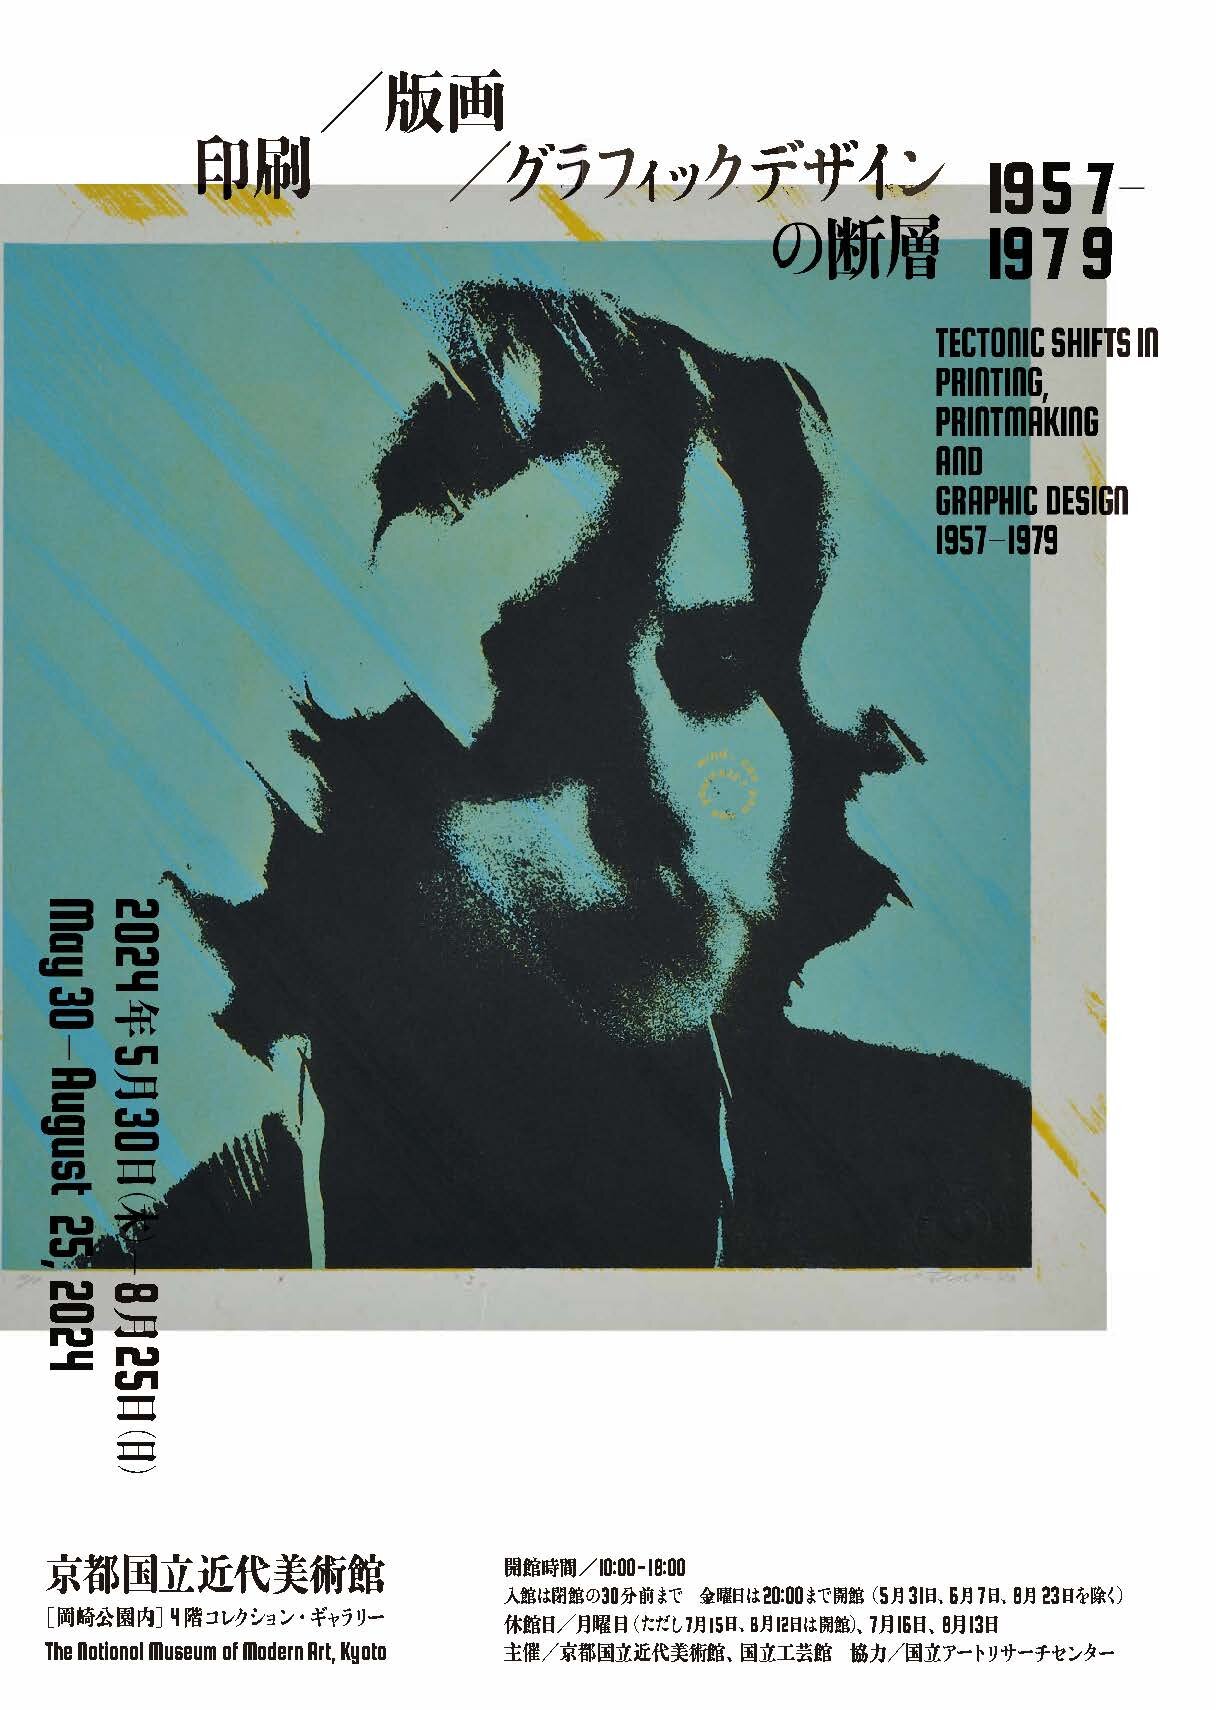 会場：京都国立近代美術館 | 印刷／版画／グラフィックデザインの断層 1957-1979

